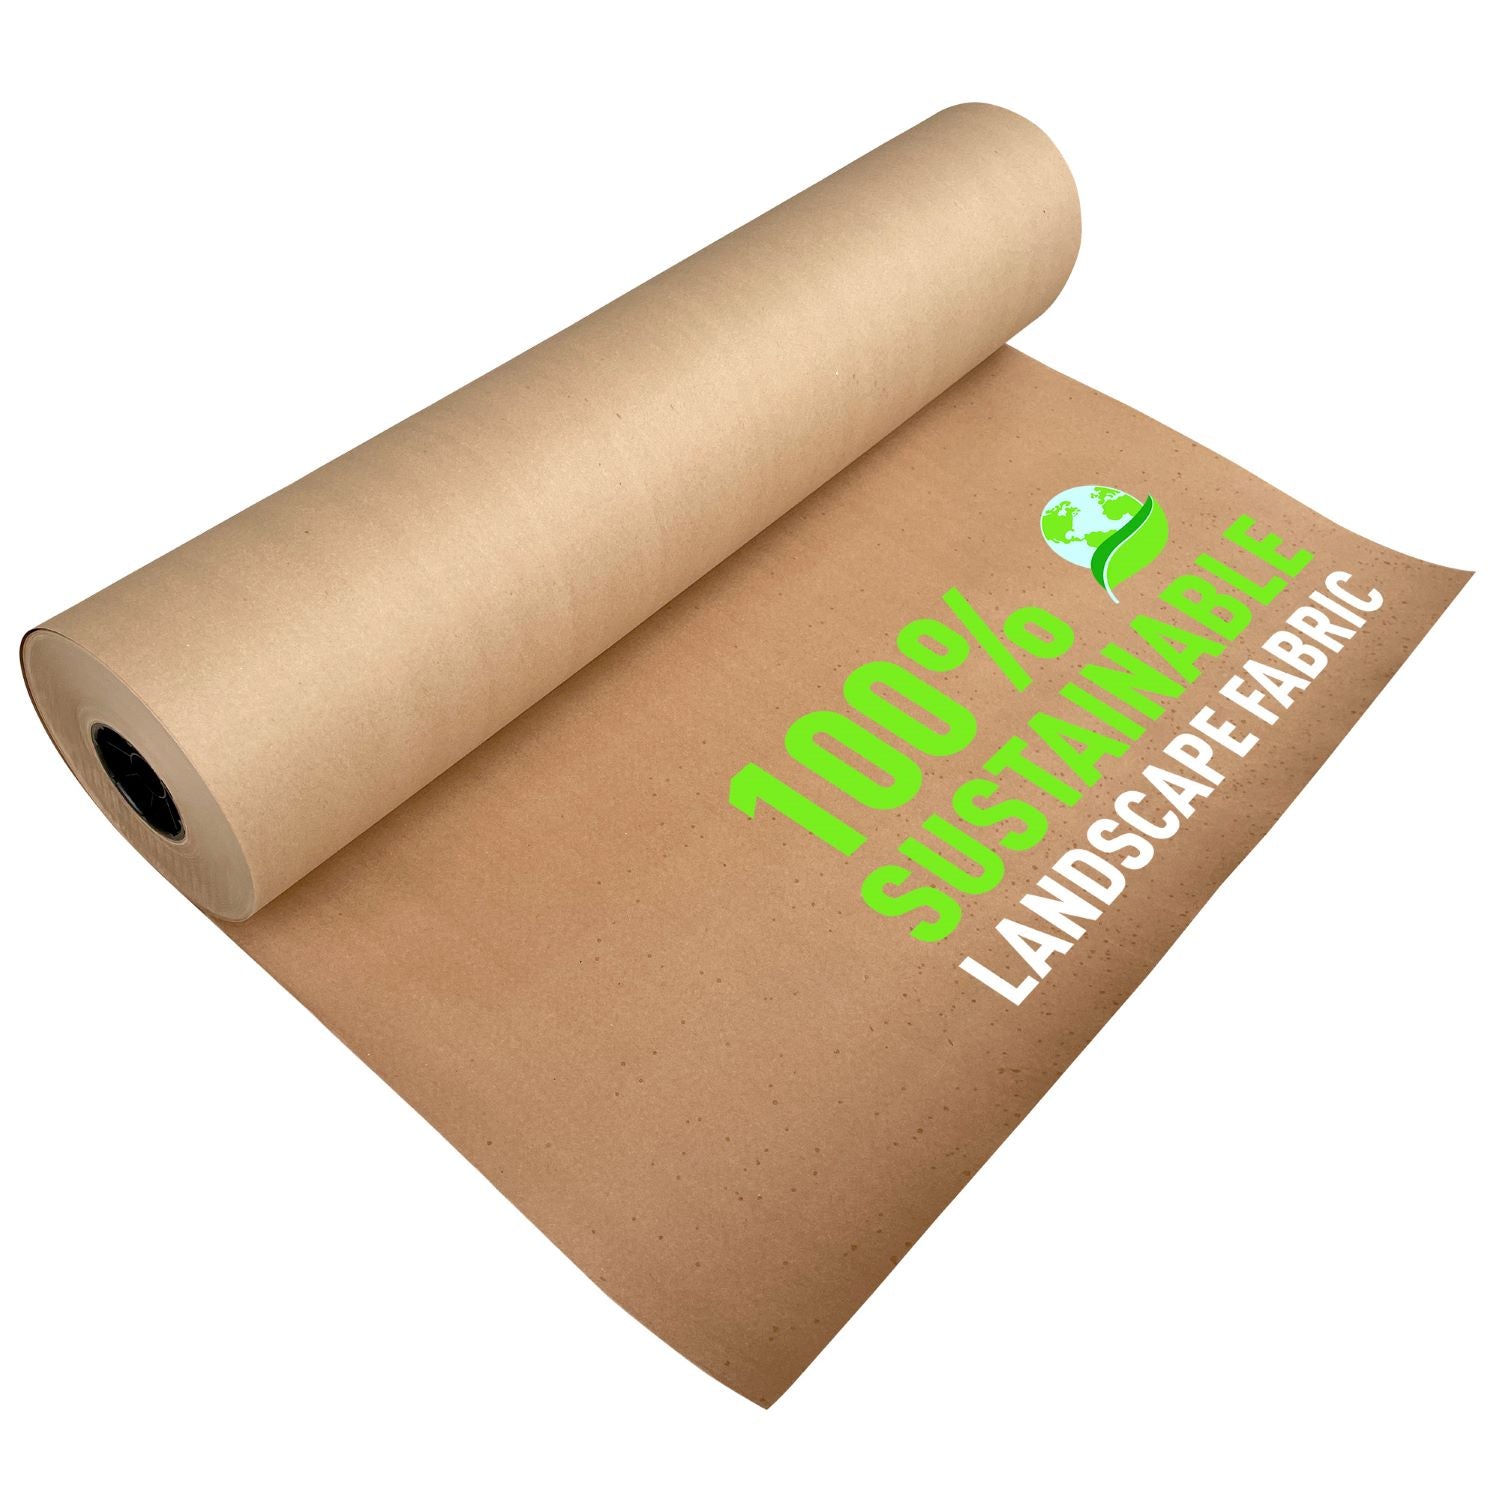 24 - 50 lb. Black Kraft Paper Roll - 1 Roll